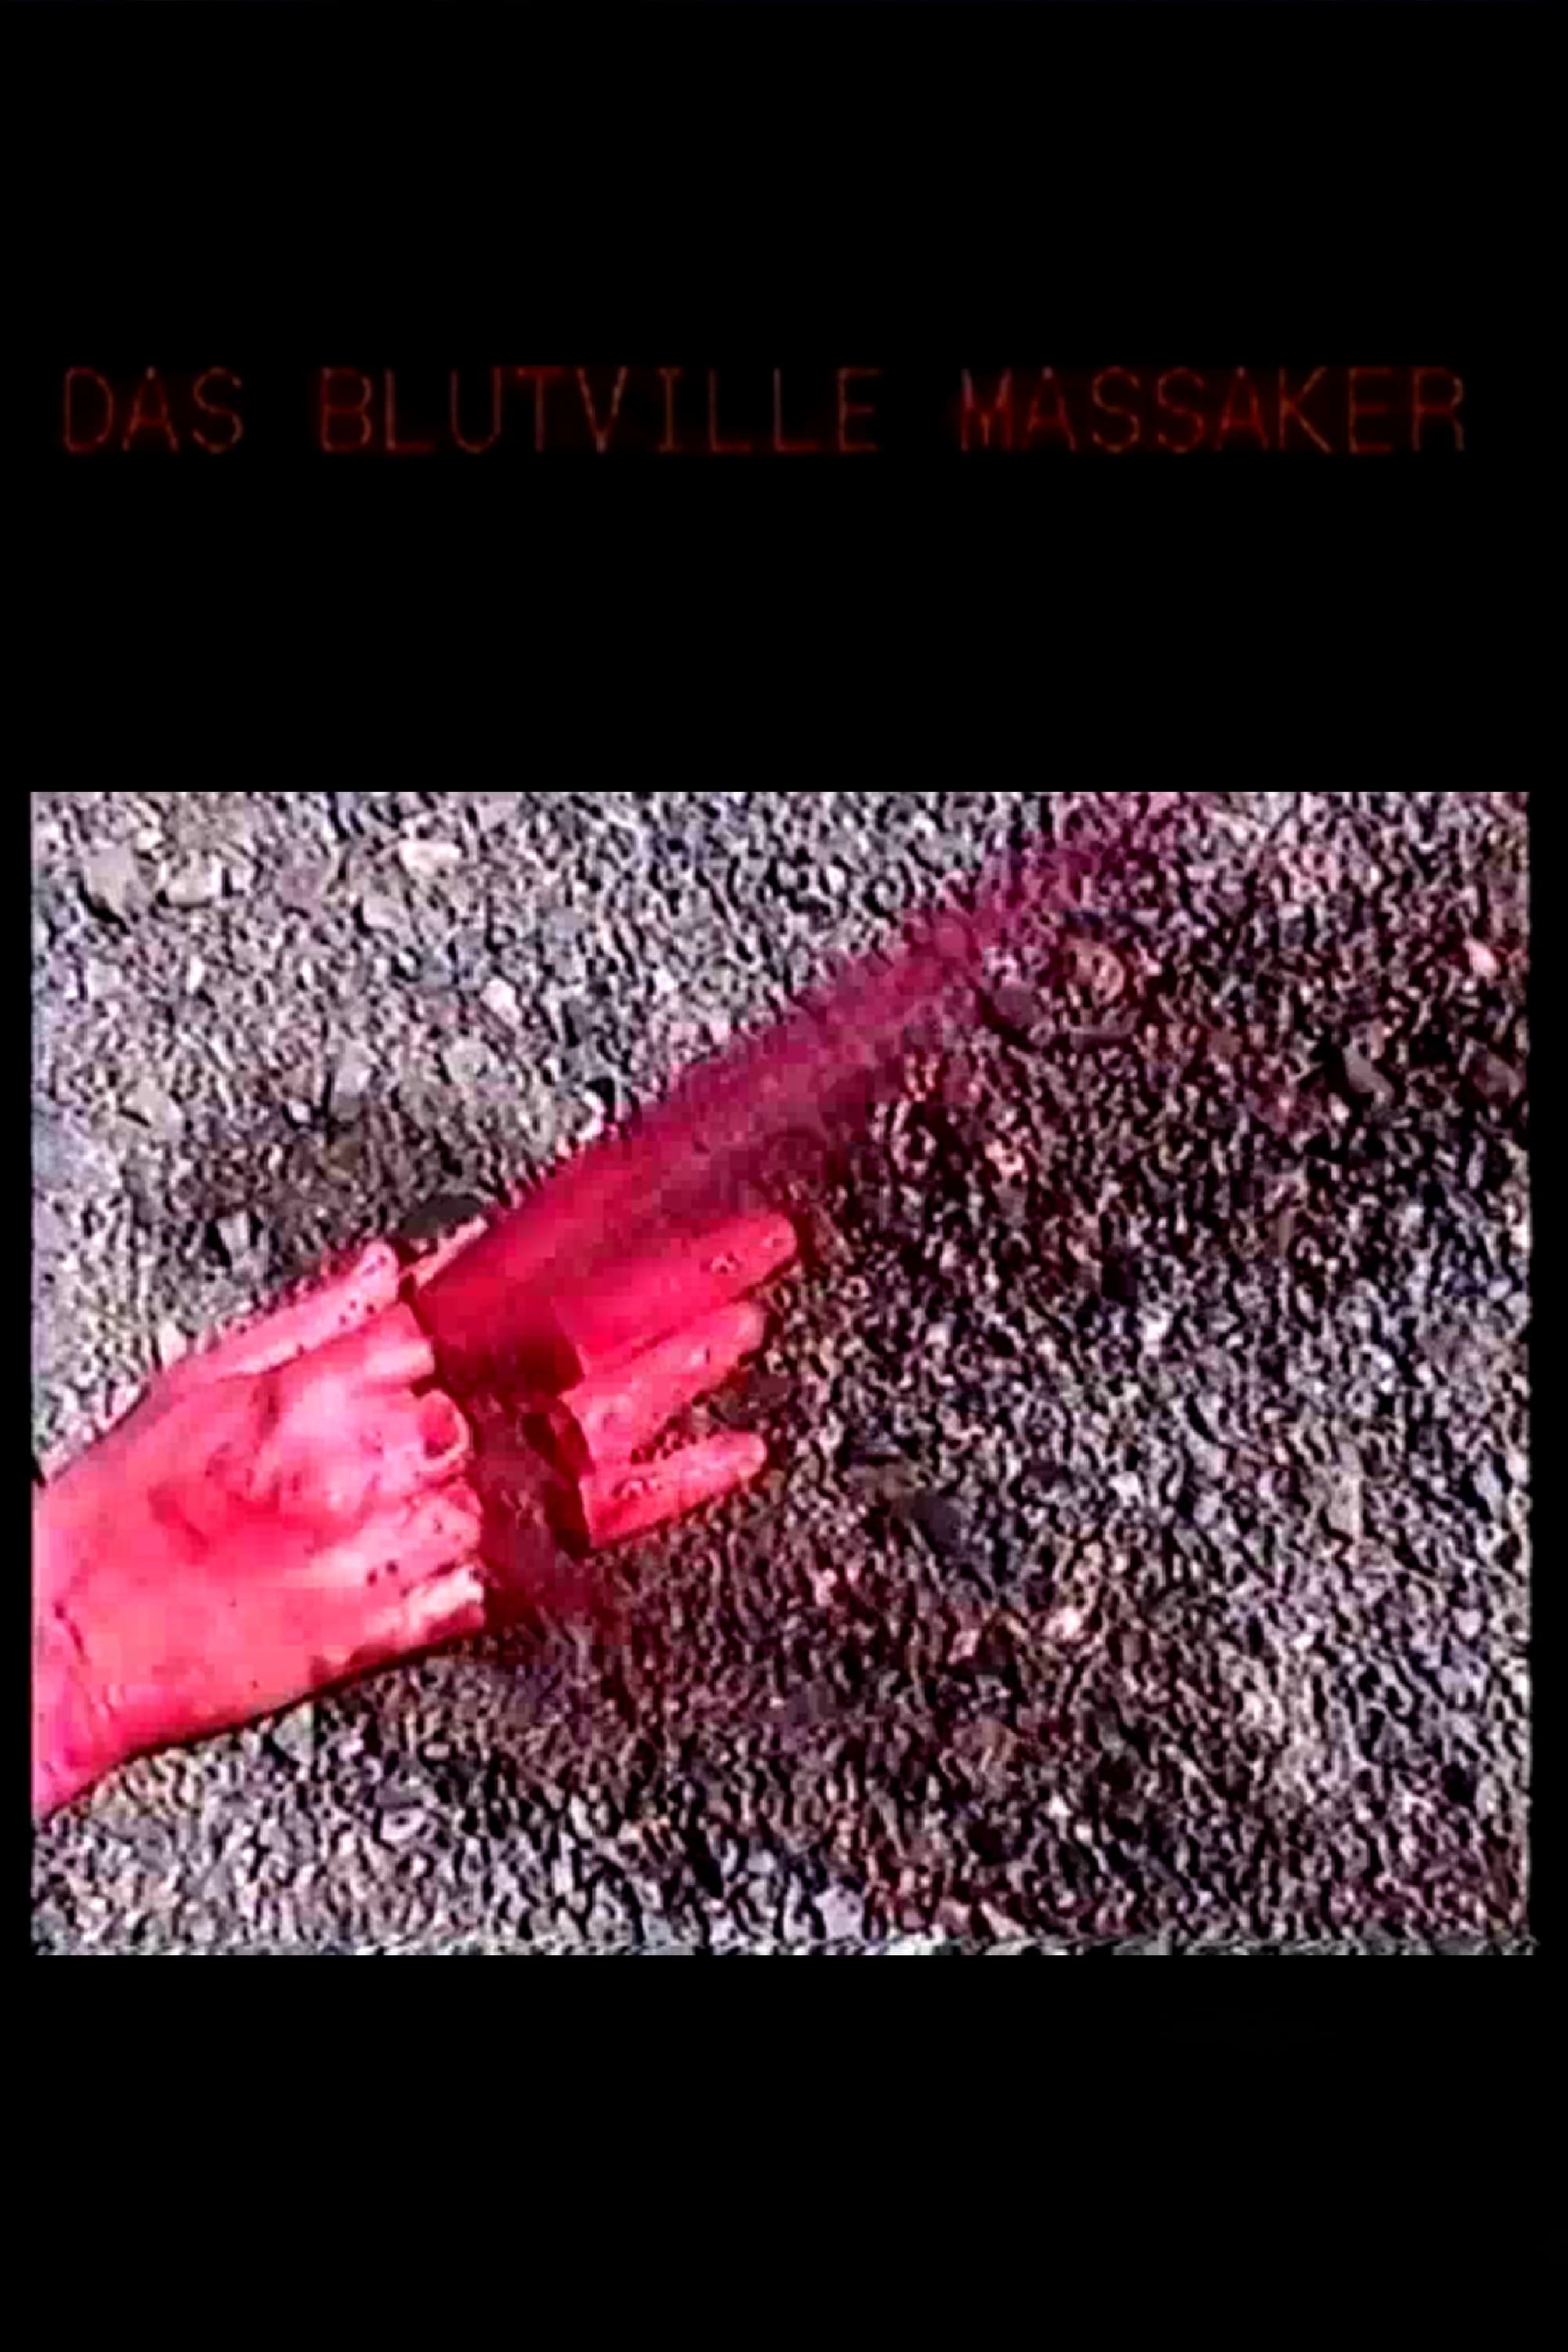 The Bloodville Massacre